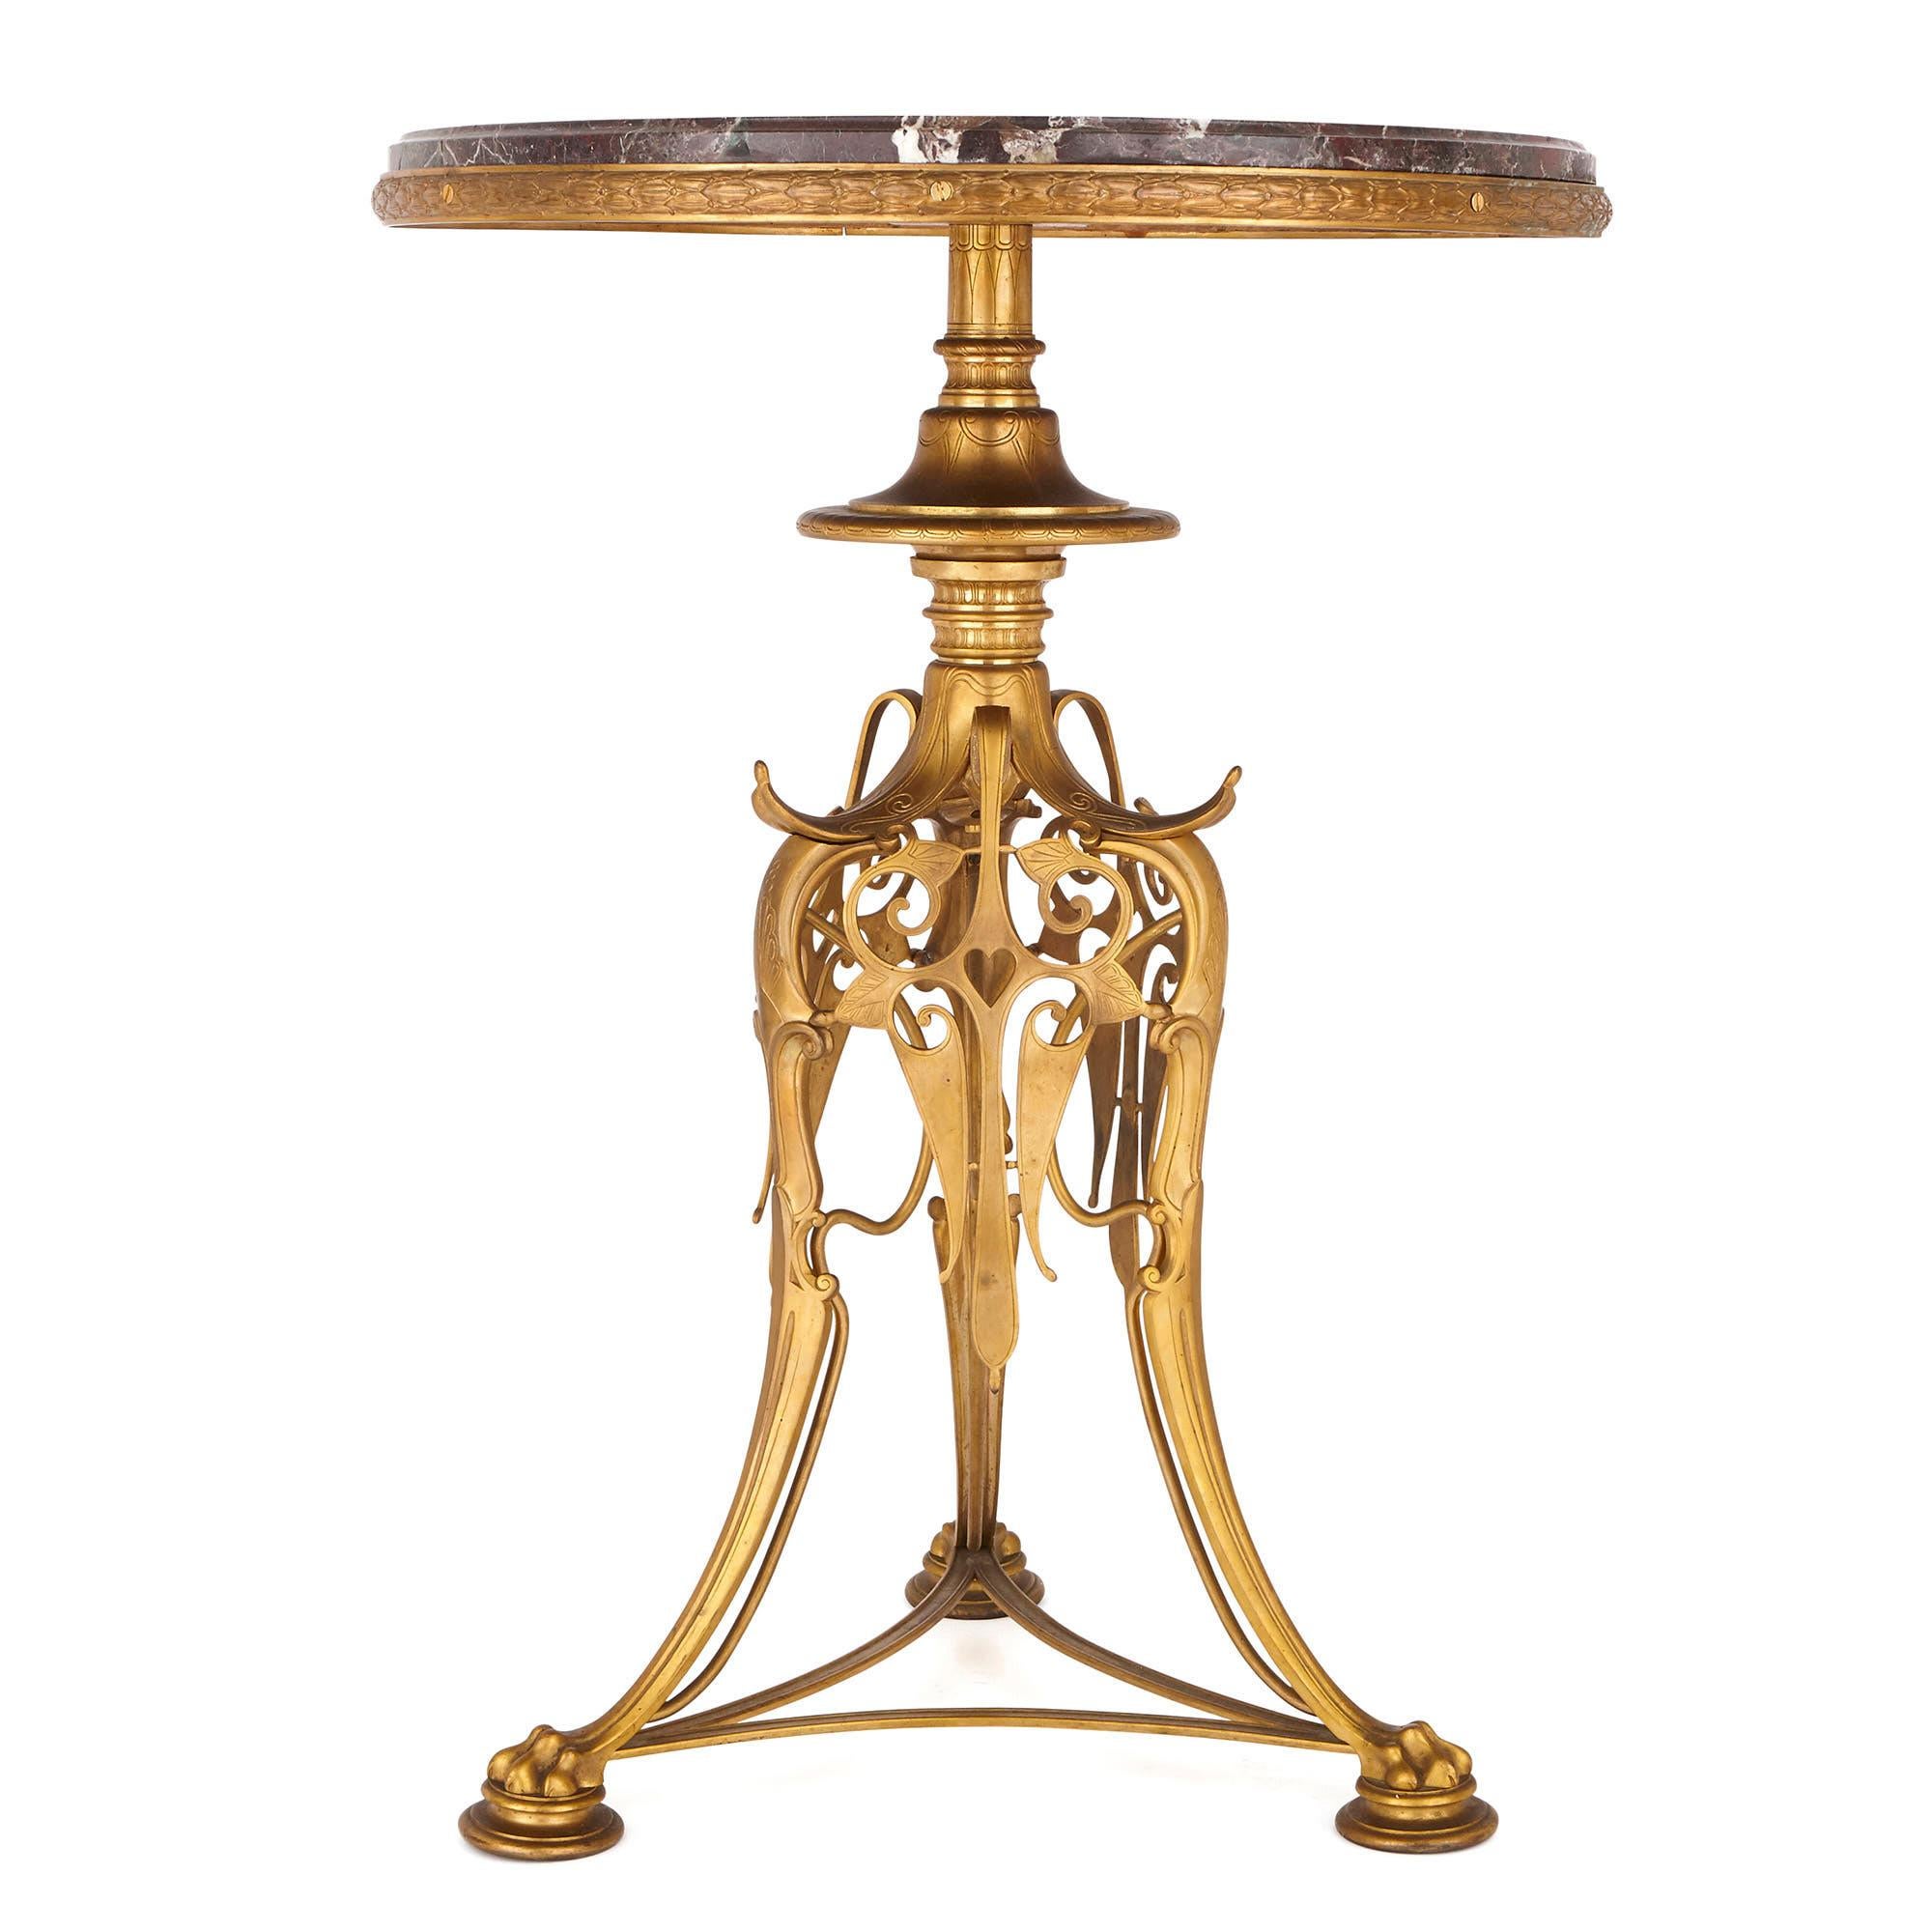 Ces magnifiques et inhabituelles tables rondes (ou guéridons) ont été fabriquées par le principal fabricant de bronze de la Belle Époque française, la fonderie Barbedienne. Fondée en 1838, l'entreprise s'est spécialisée dans la production de bronzes